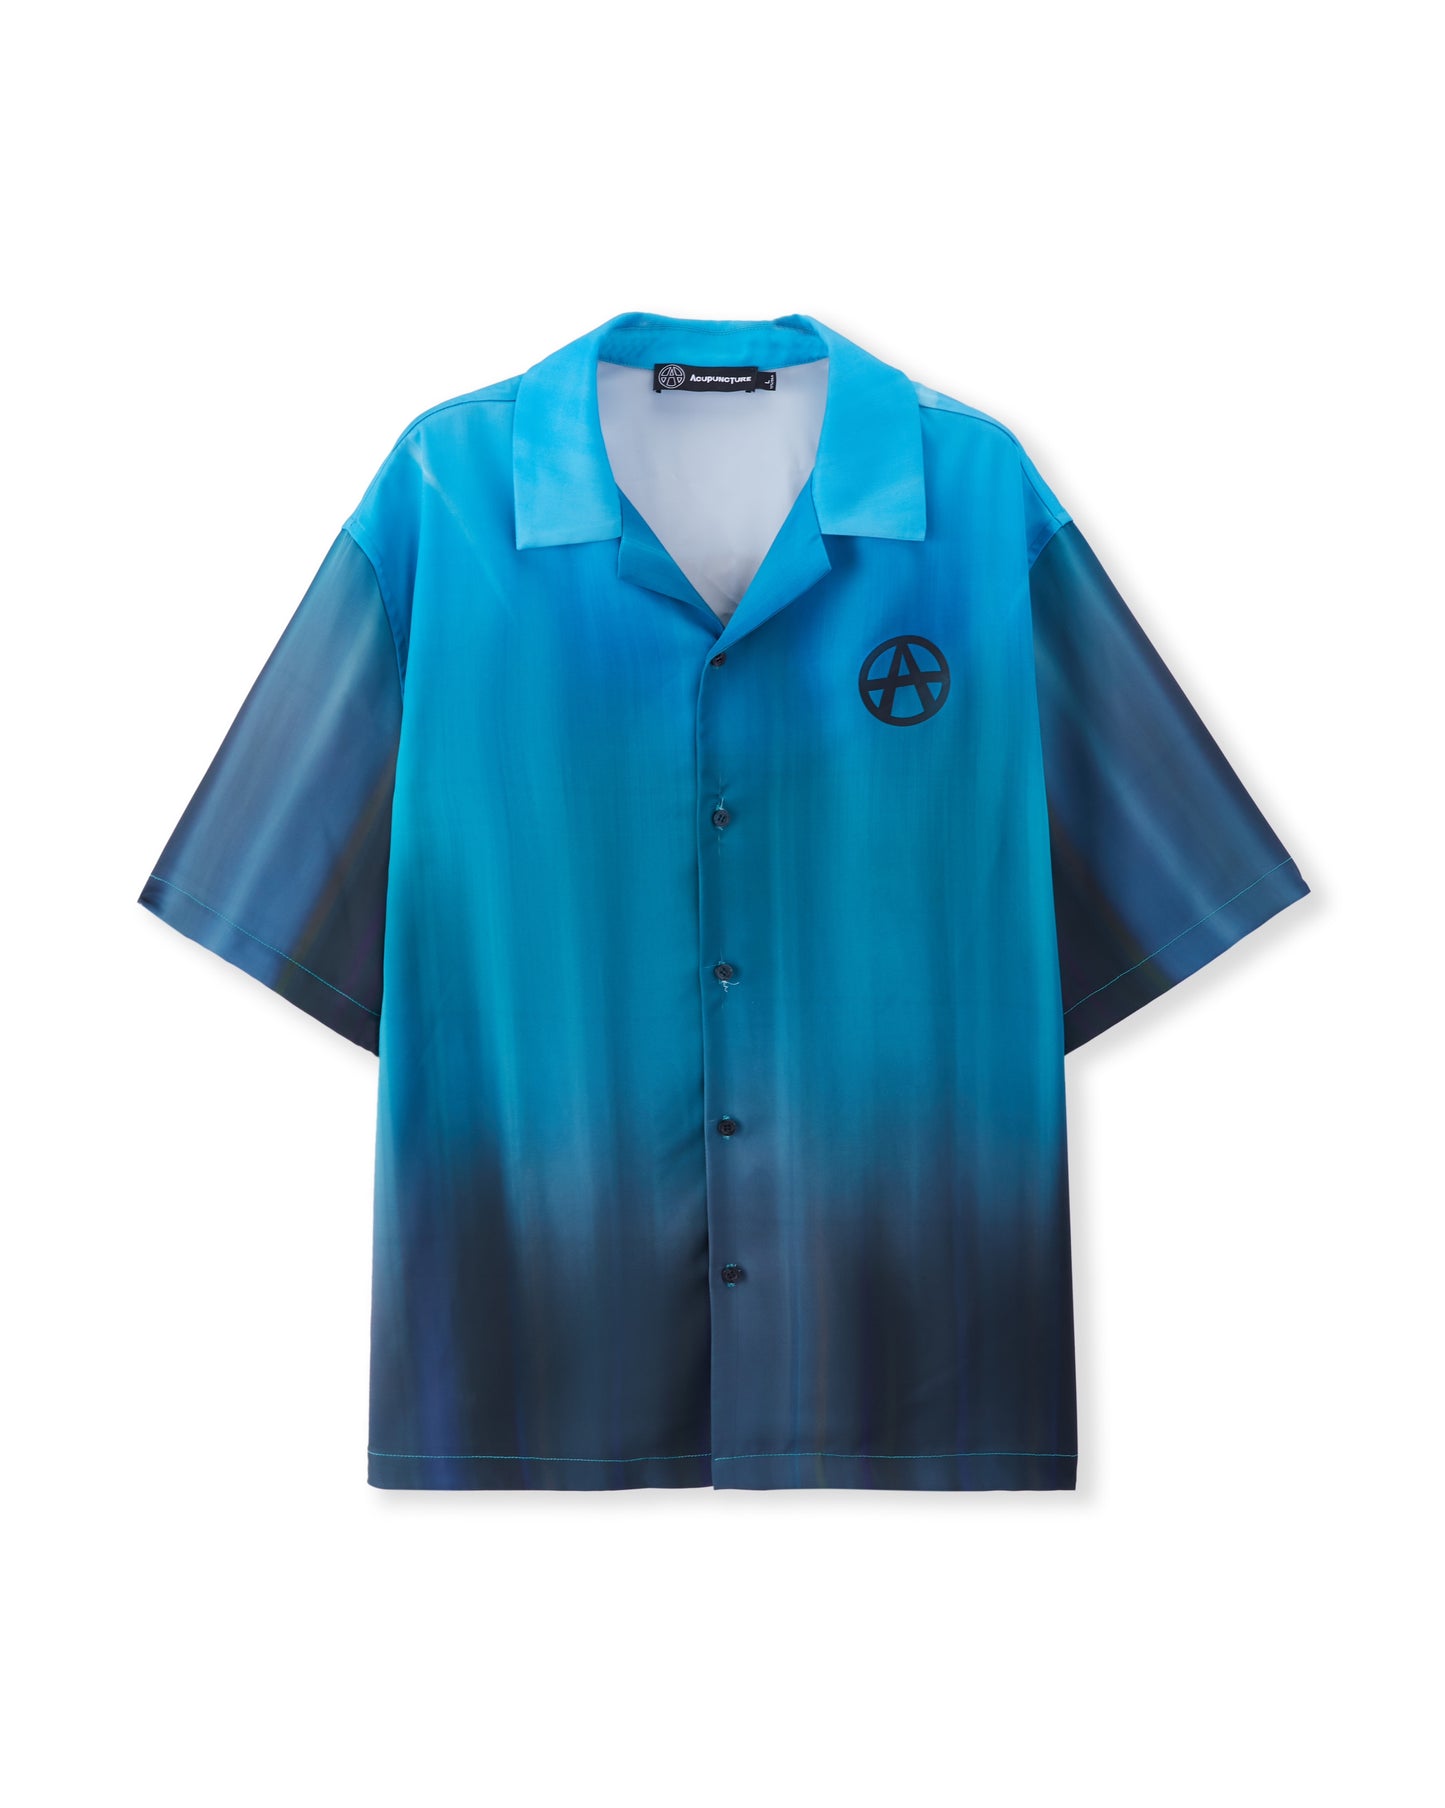 “Skyline shirt” mixed blue